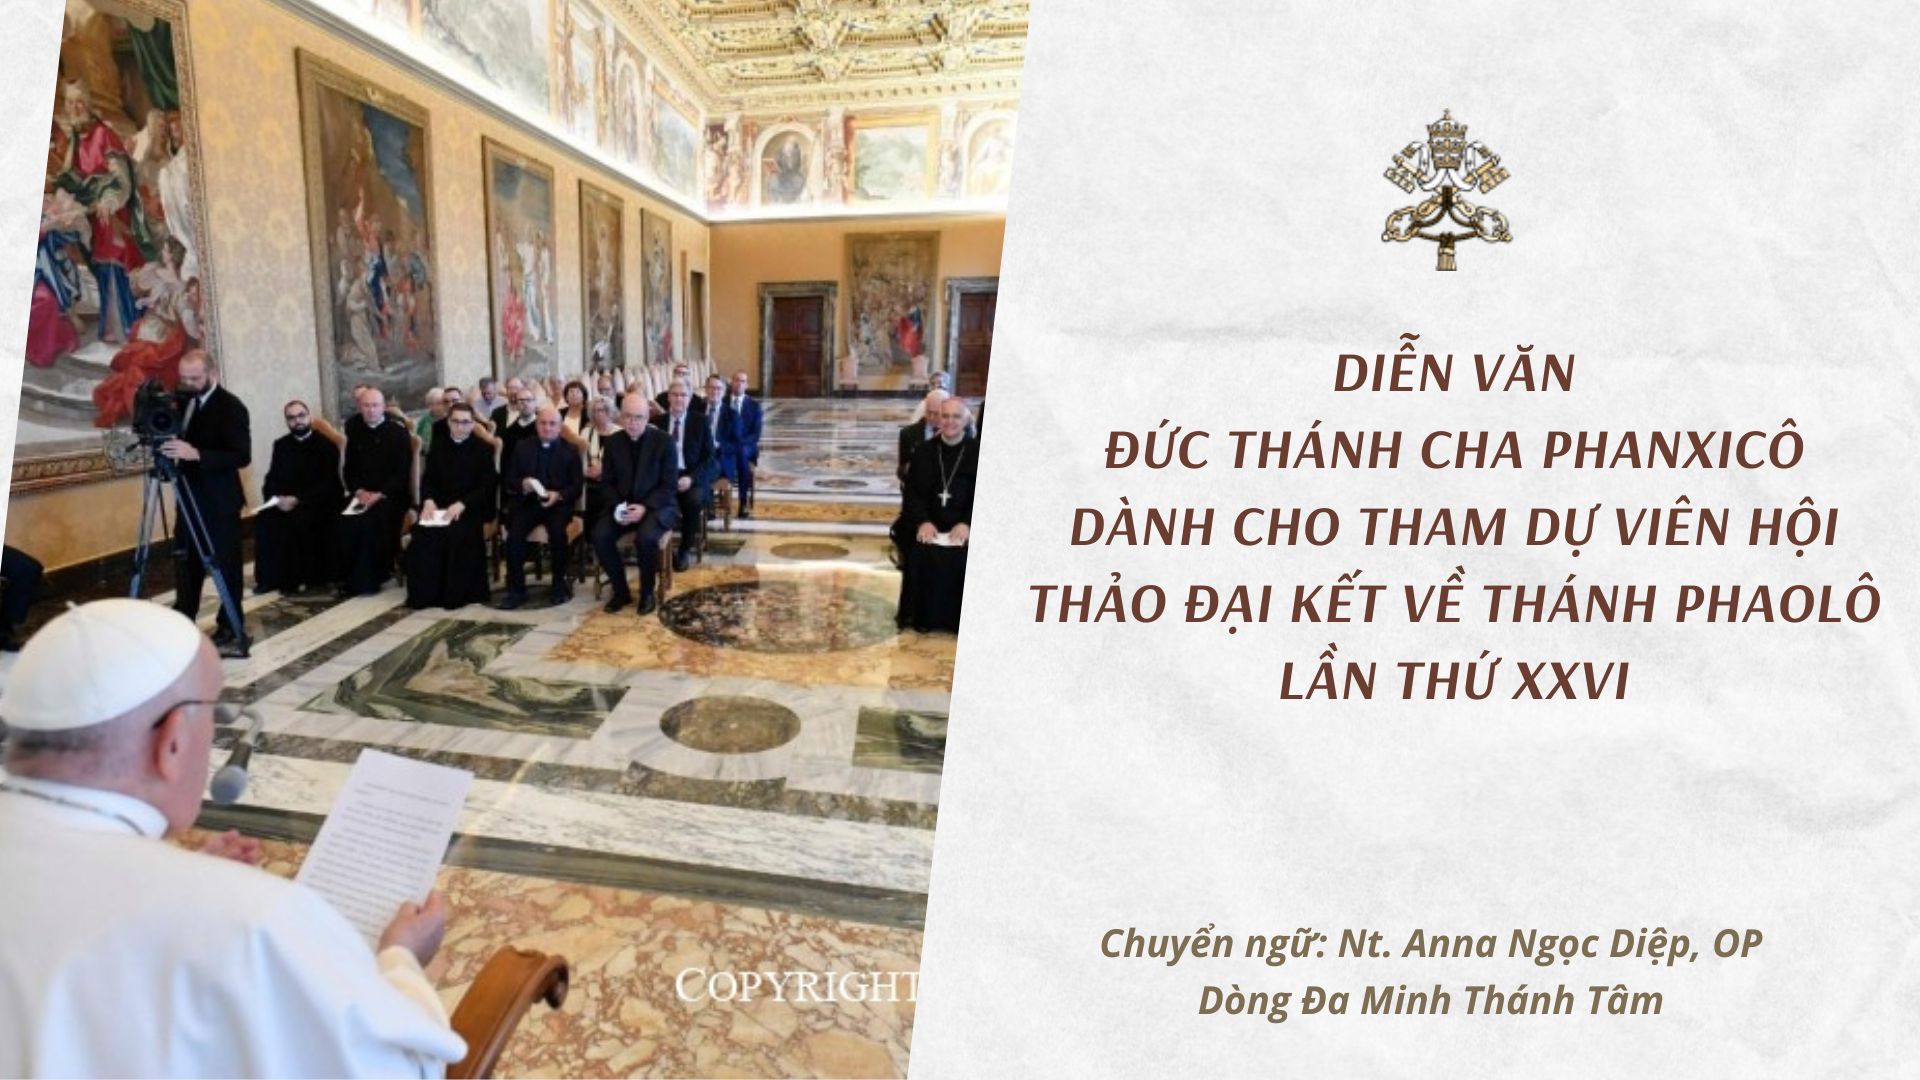 Diễn văn Đức Thánh Cha Phanxicô dành cho tham dự viên Hội thảo Đại kết về Thánh Phaolô lần thứ XXVI